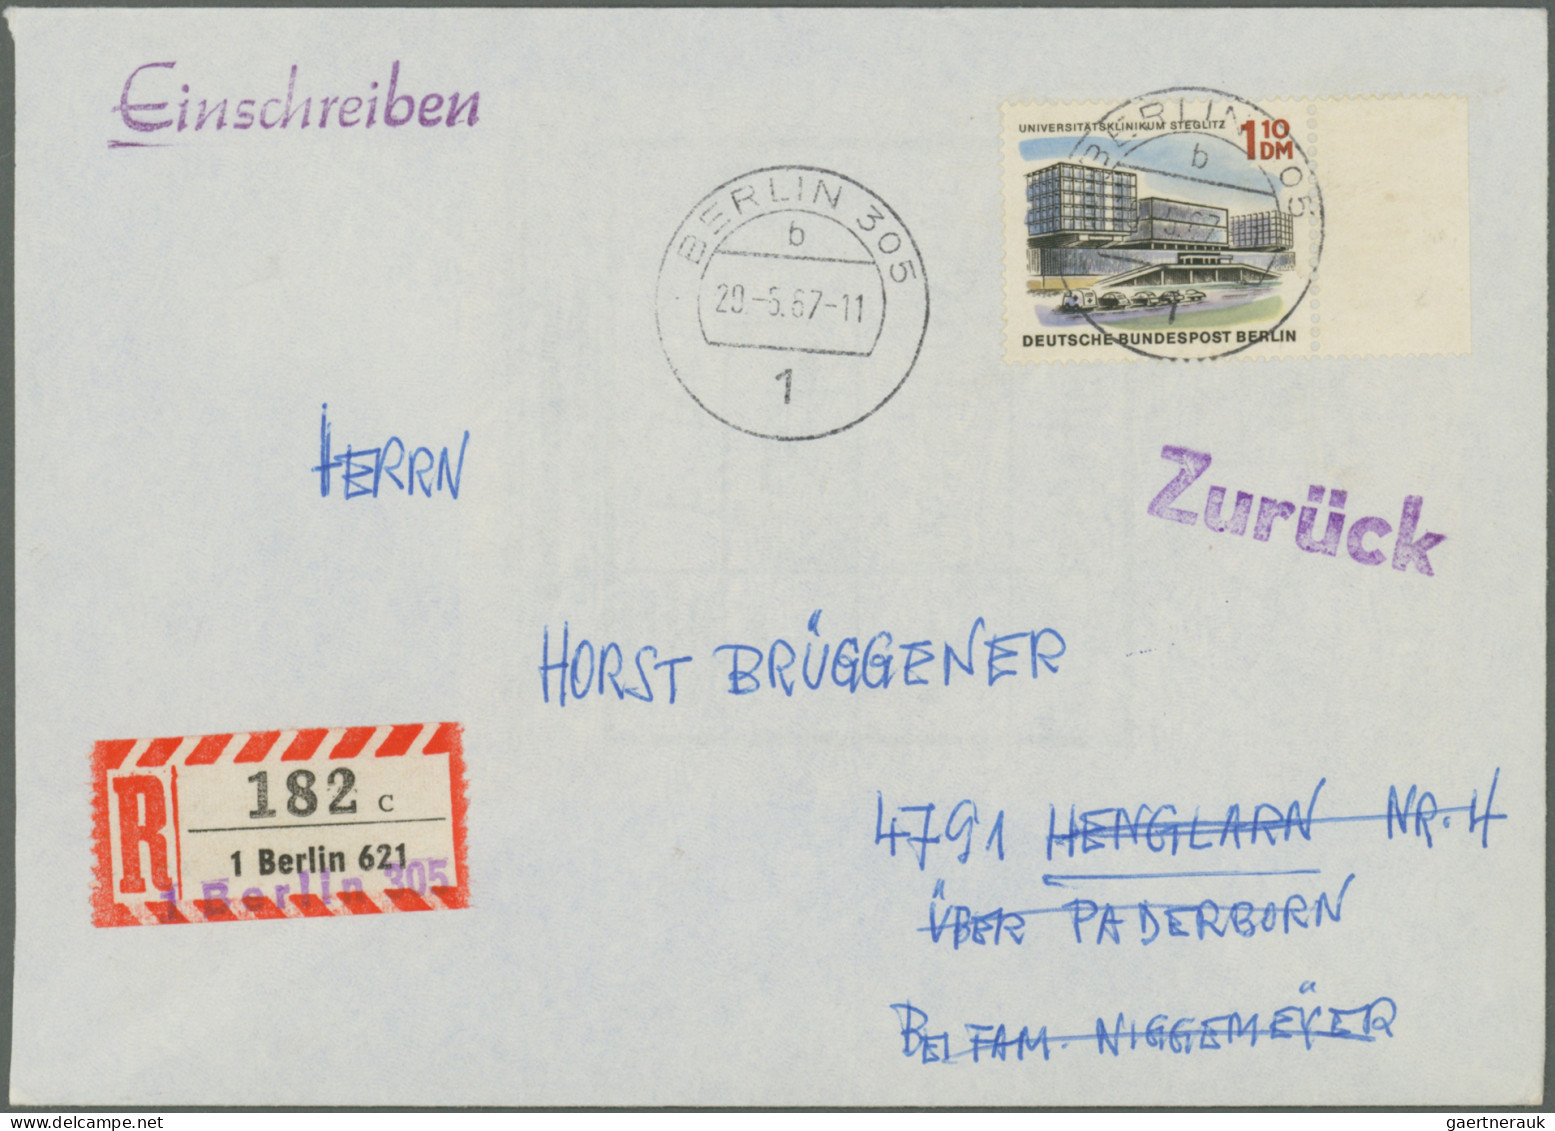 Berlin: 1962/1991, vielseitige Partie von ca. 165 Briefen und Karten, alle mit B